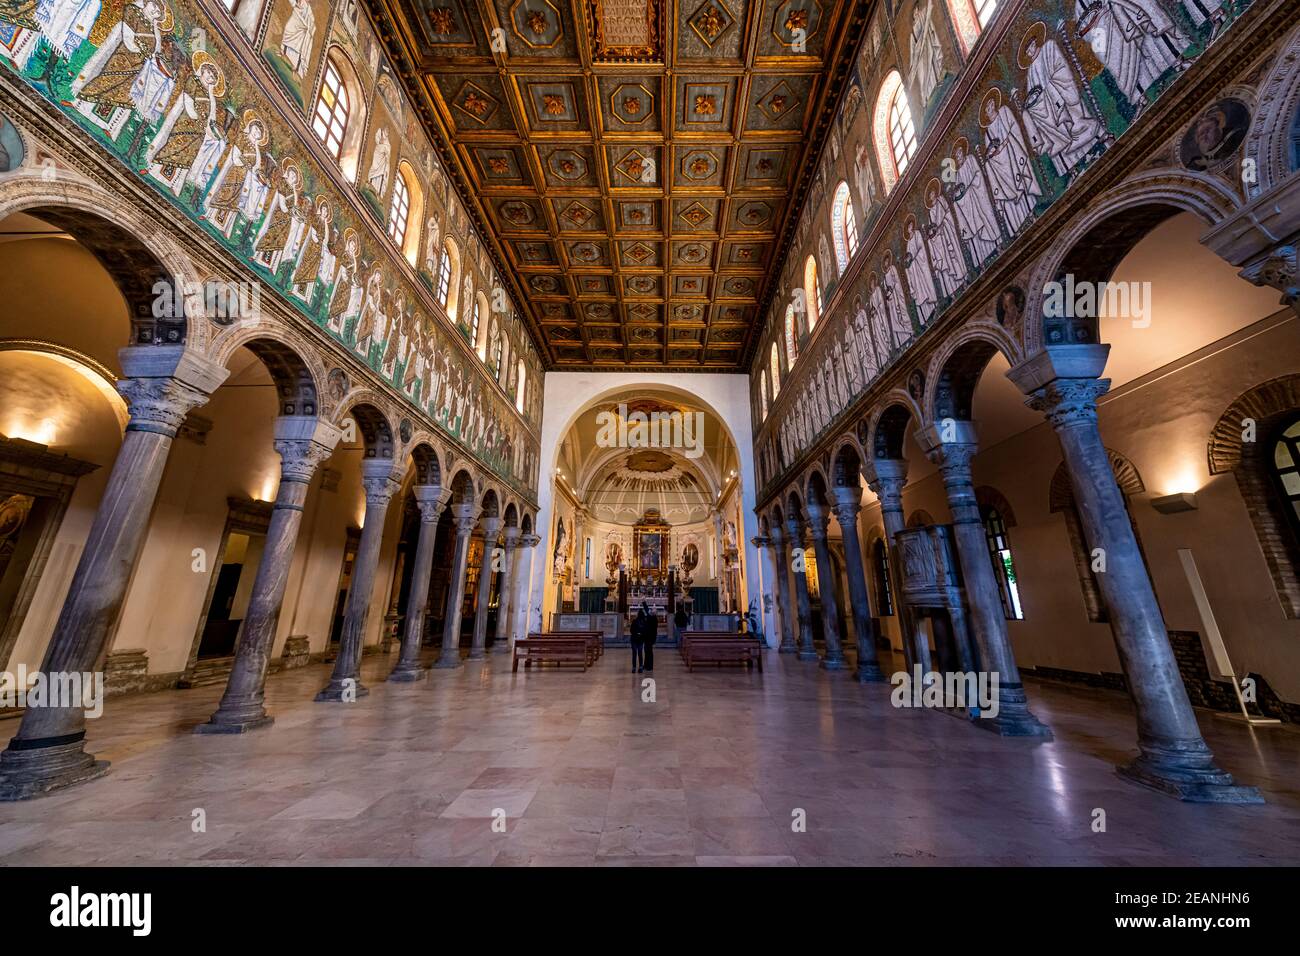 Mosaïques de la Basilique de Sant'Apollinare Nuovo, site classé au patrimoine mondial de l'UNESCO, Ravenne, Émilie-Romagne, Italie, Europe Banque D'Images